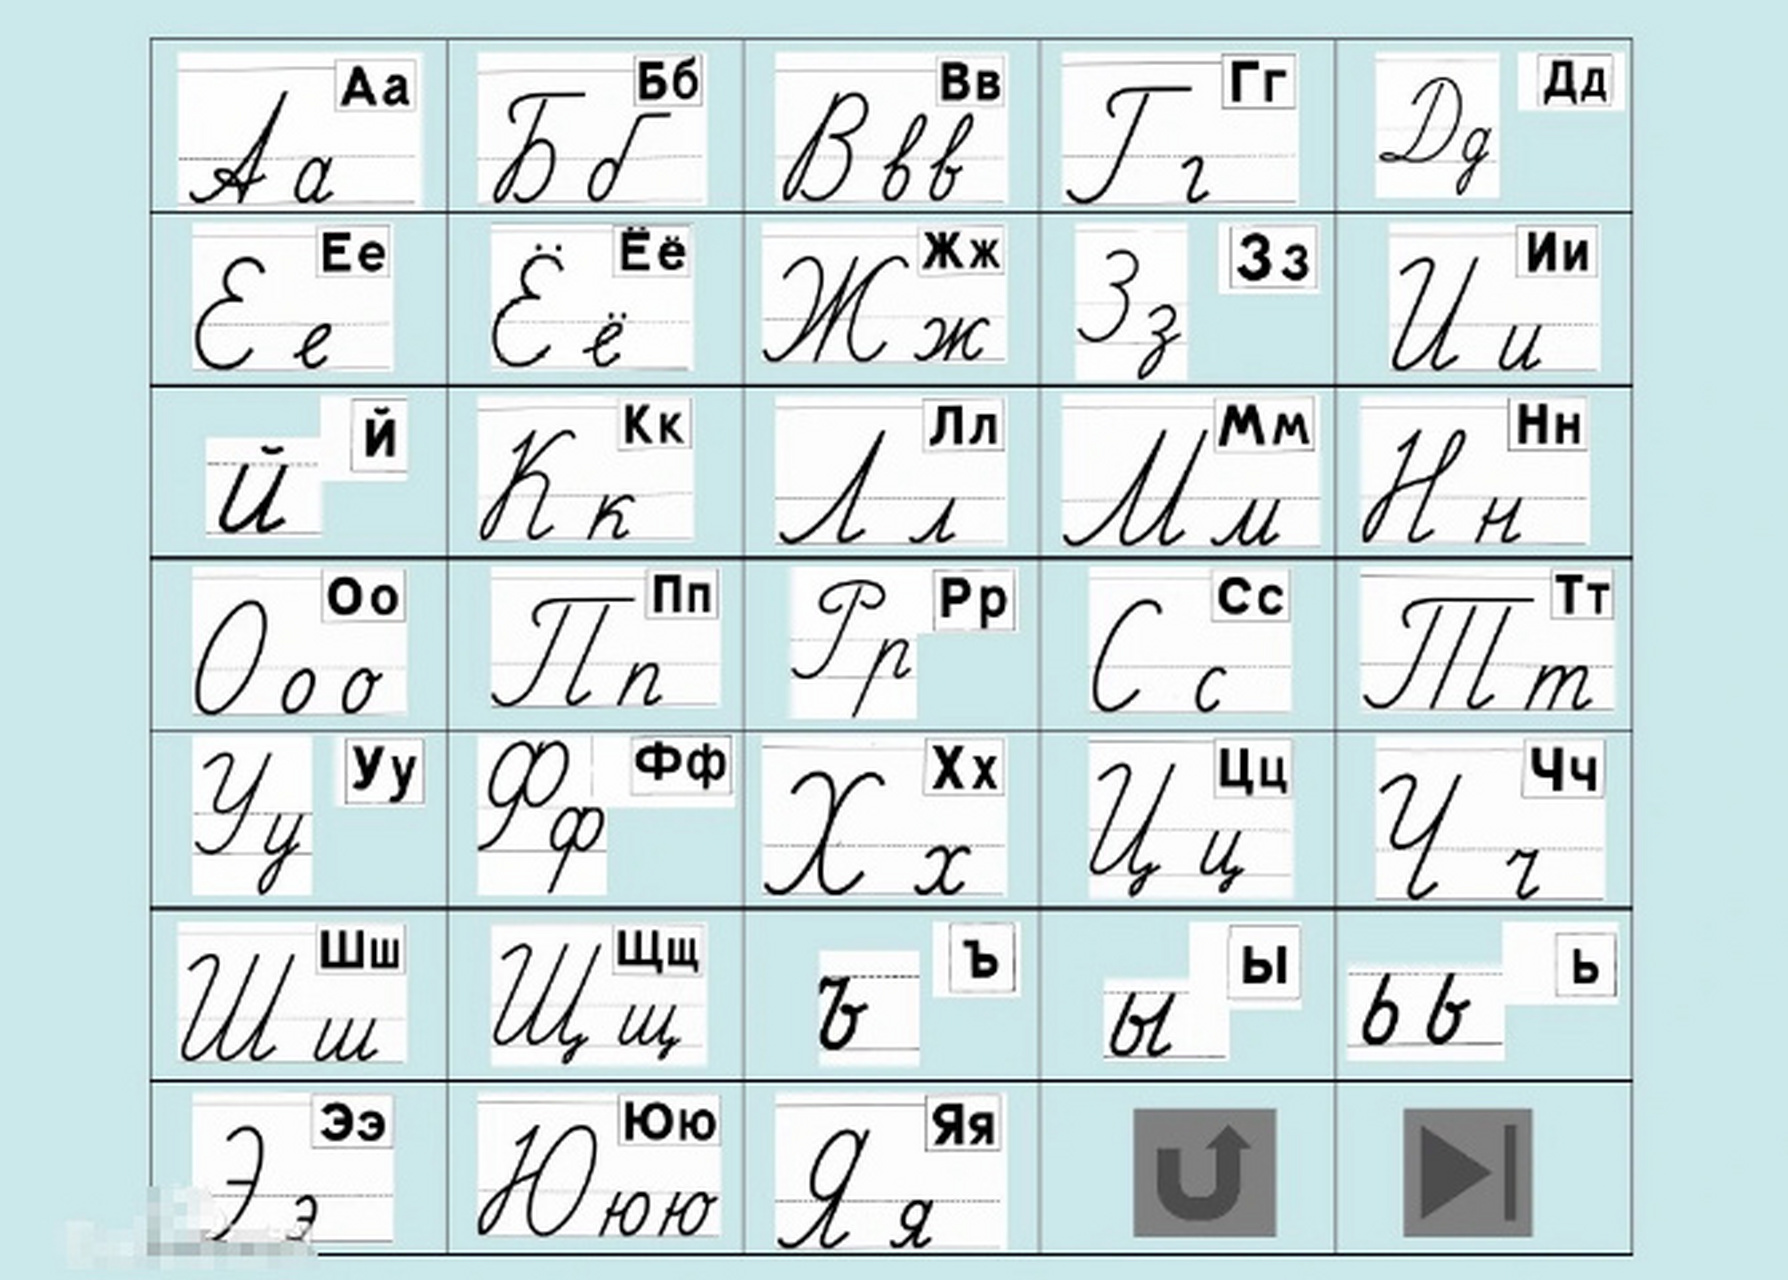 今天先给大家介绍一下俄语字母表,俄语共有33个字母,其中10个元音字母